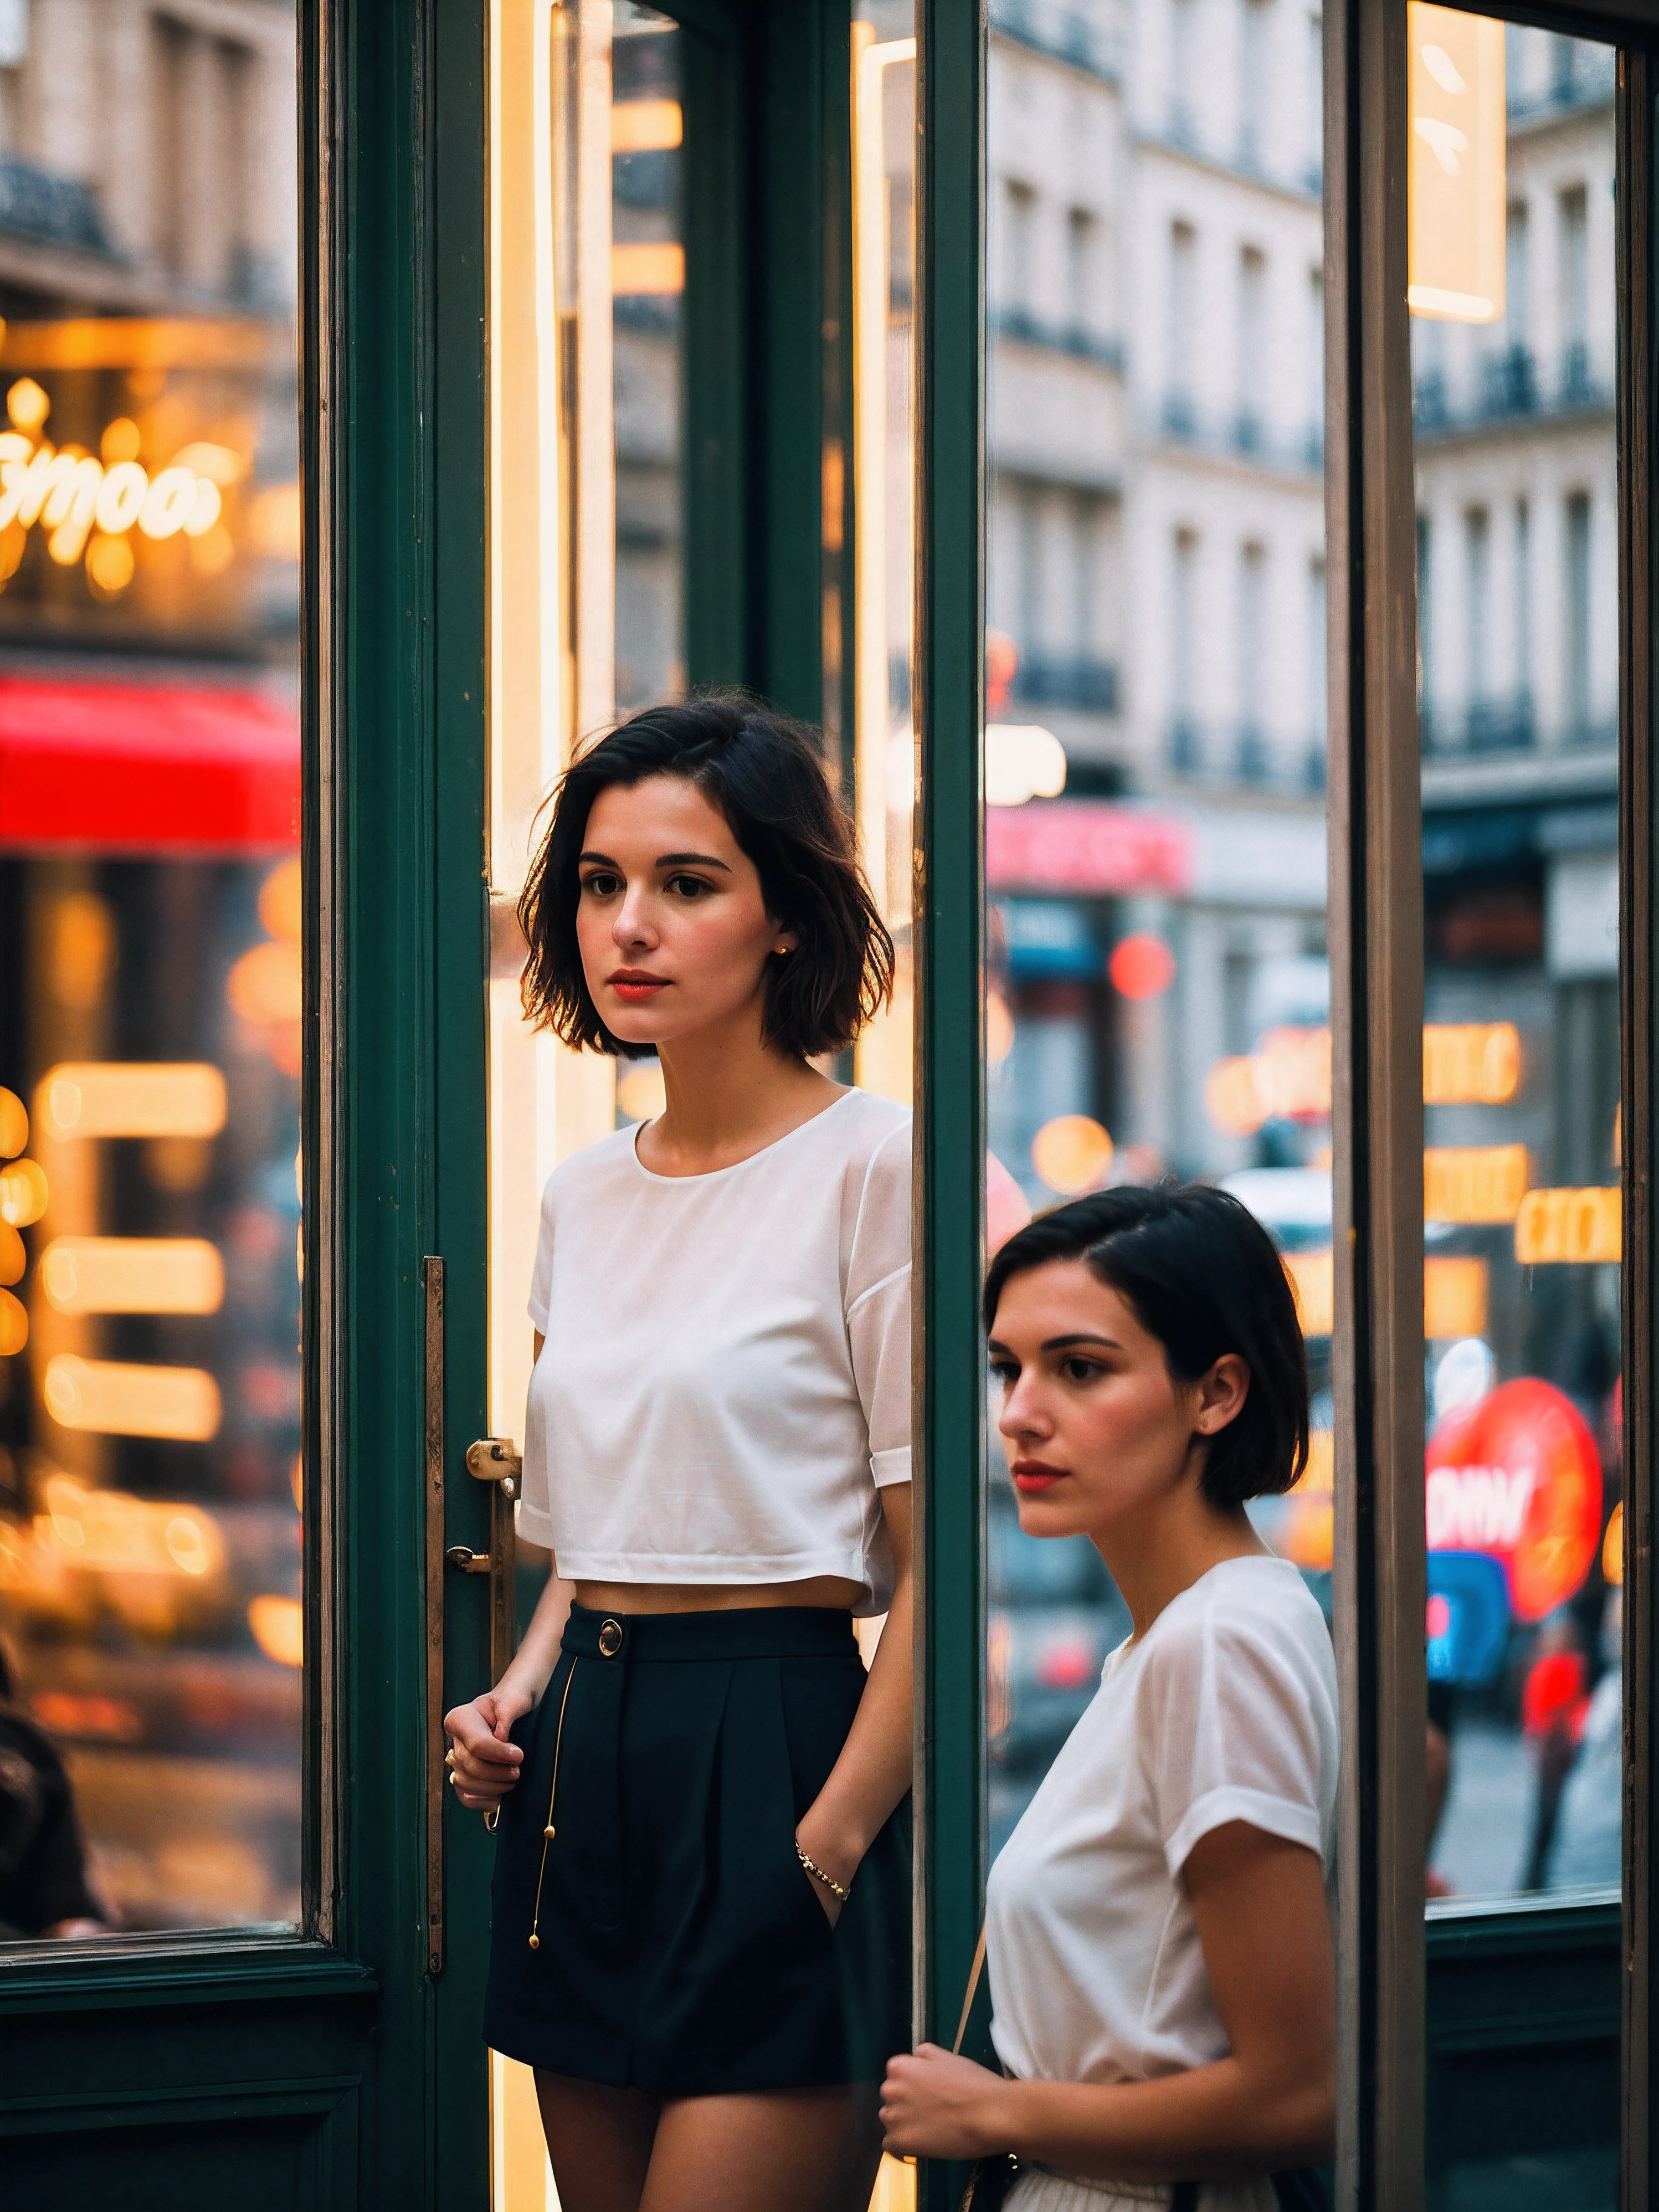 时尚法国女孩的街拍照片, 短发, 在橱窗里购物时，拍下她在店面上的倒影, 上身框架, 在巴黎古雅的街道上, 带商店招牌的霓虹灯, 从高角度拍摄, 在索尼 A7111 上, 和 (散景效果:1.3),(加里·维诺格拉德 (Gary Vinograd) 的风格:1.4)